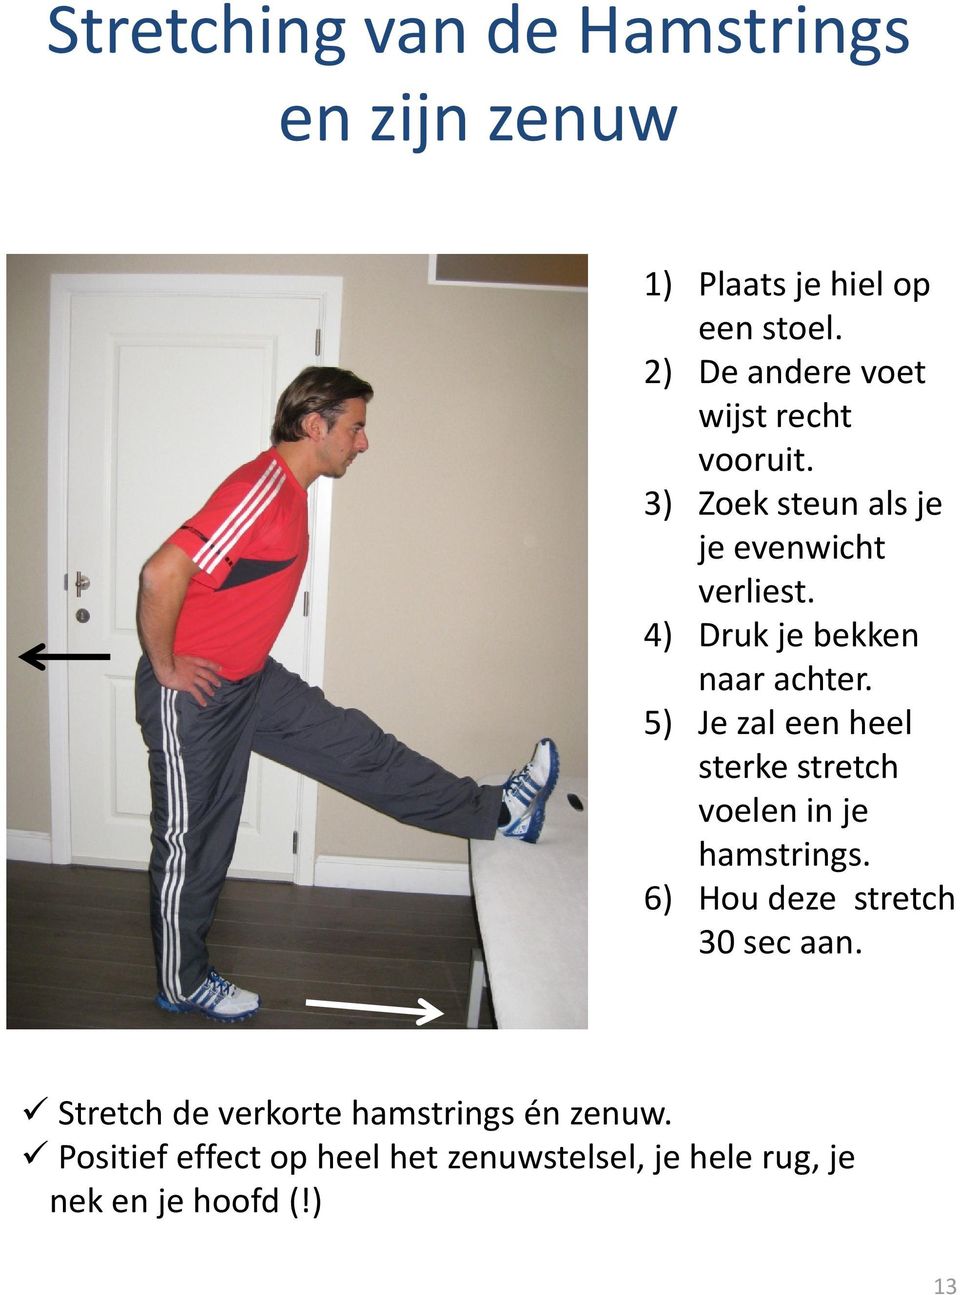 4) Druk je bekken naar achter. 5) Je zal een heel sterke stretch voelen in je hamstrings.